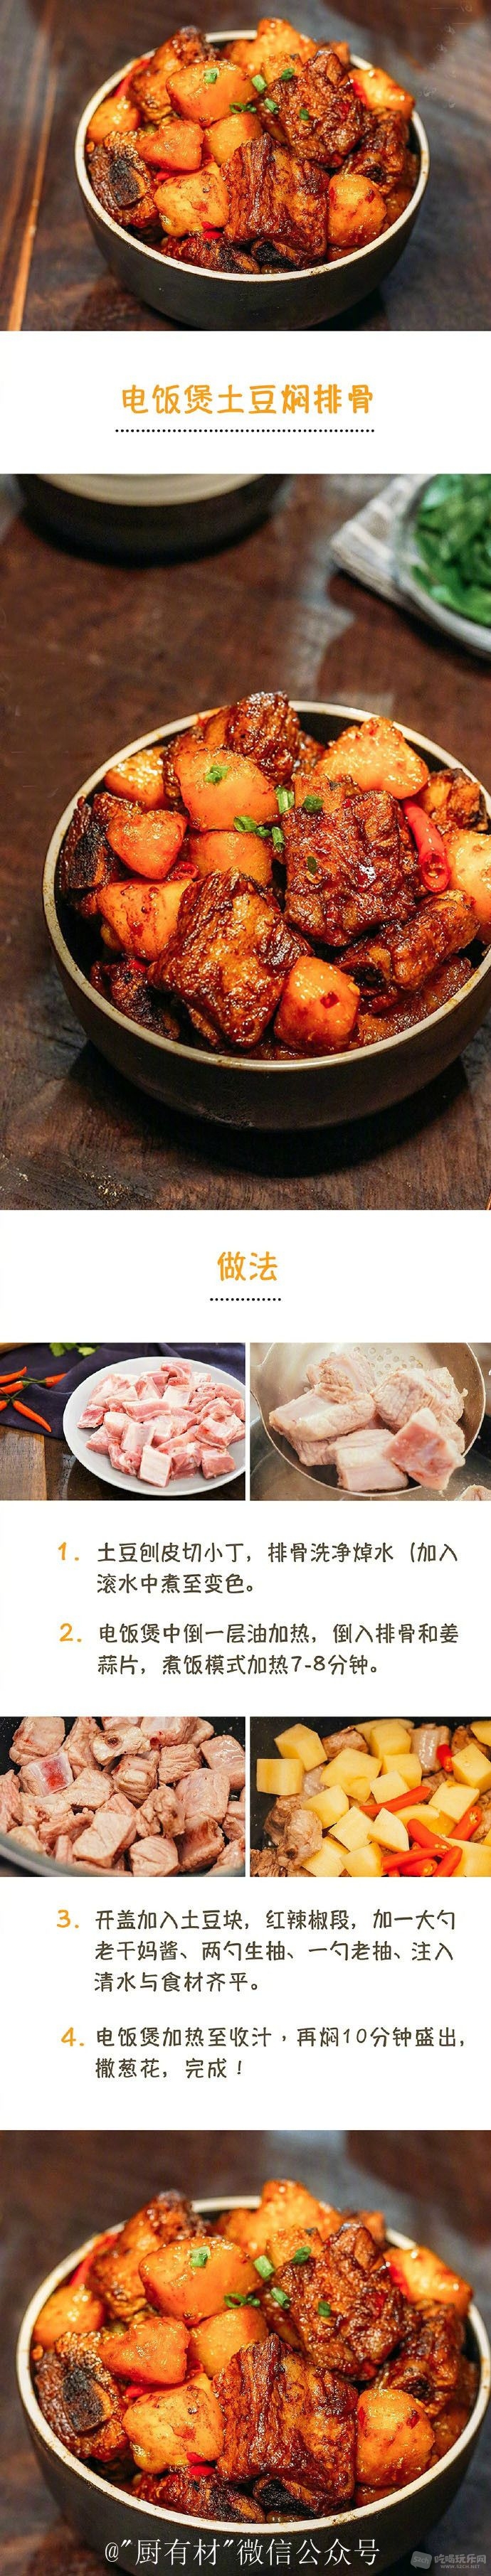 电饭煲土豆焖排骨www.cdfood.top